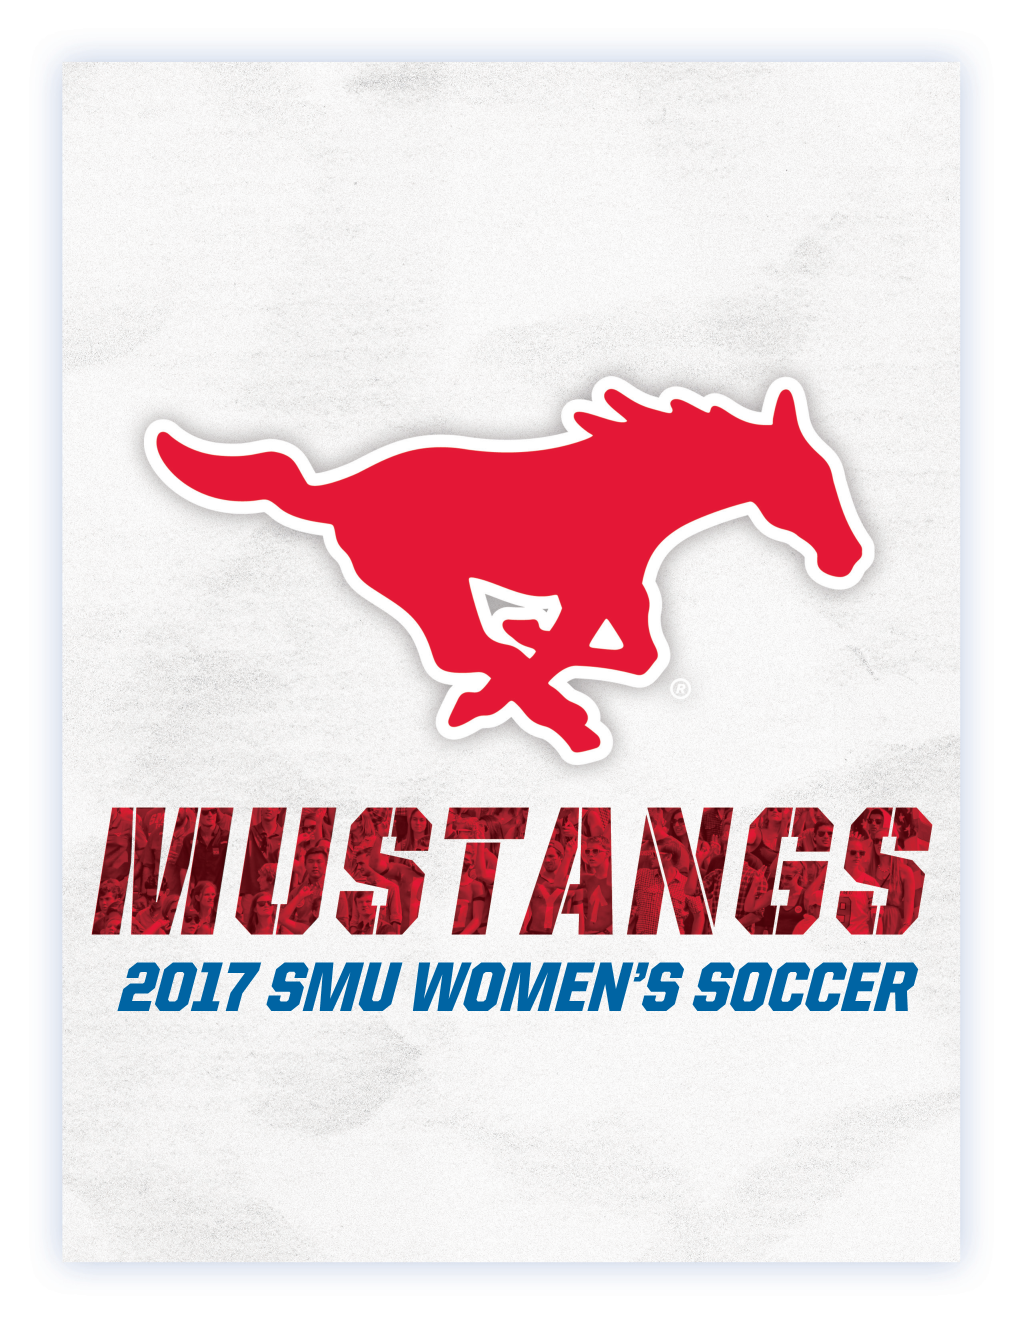 2017 Smu Women's Soccer